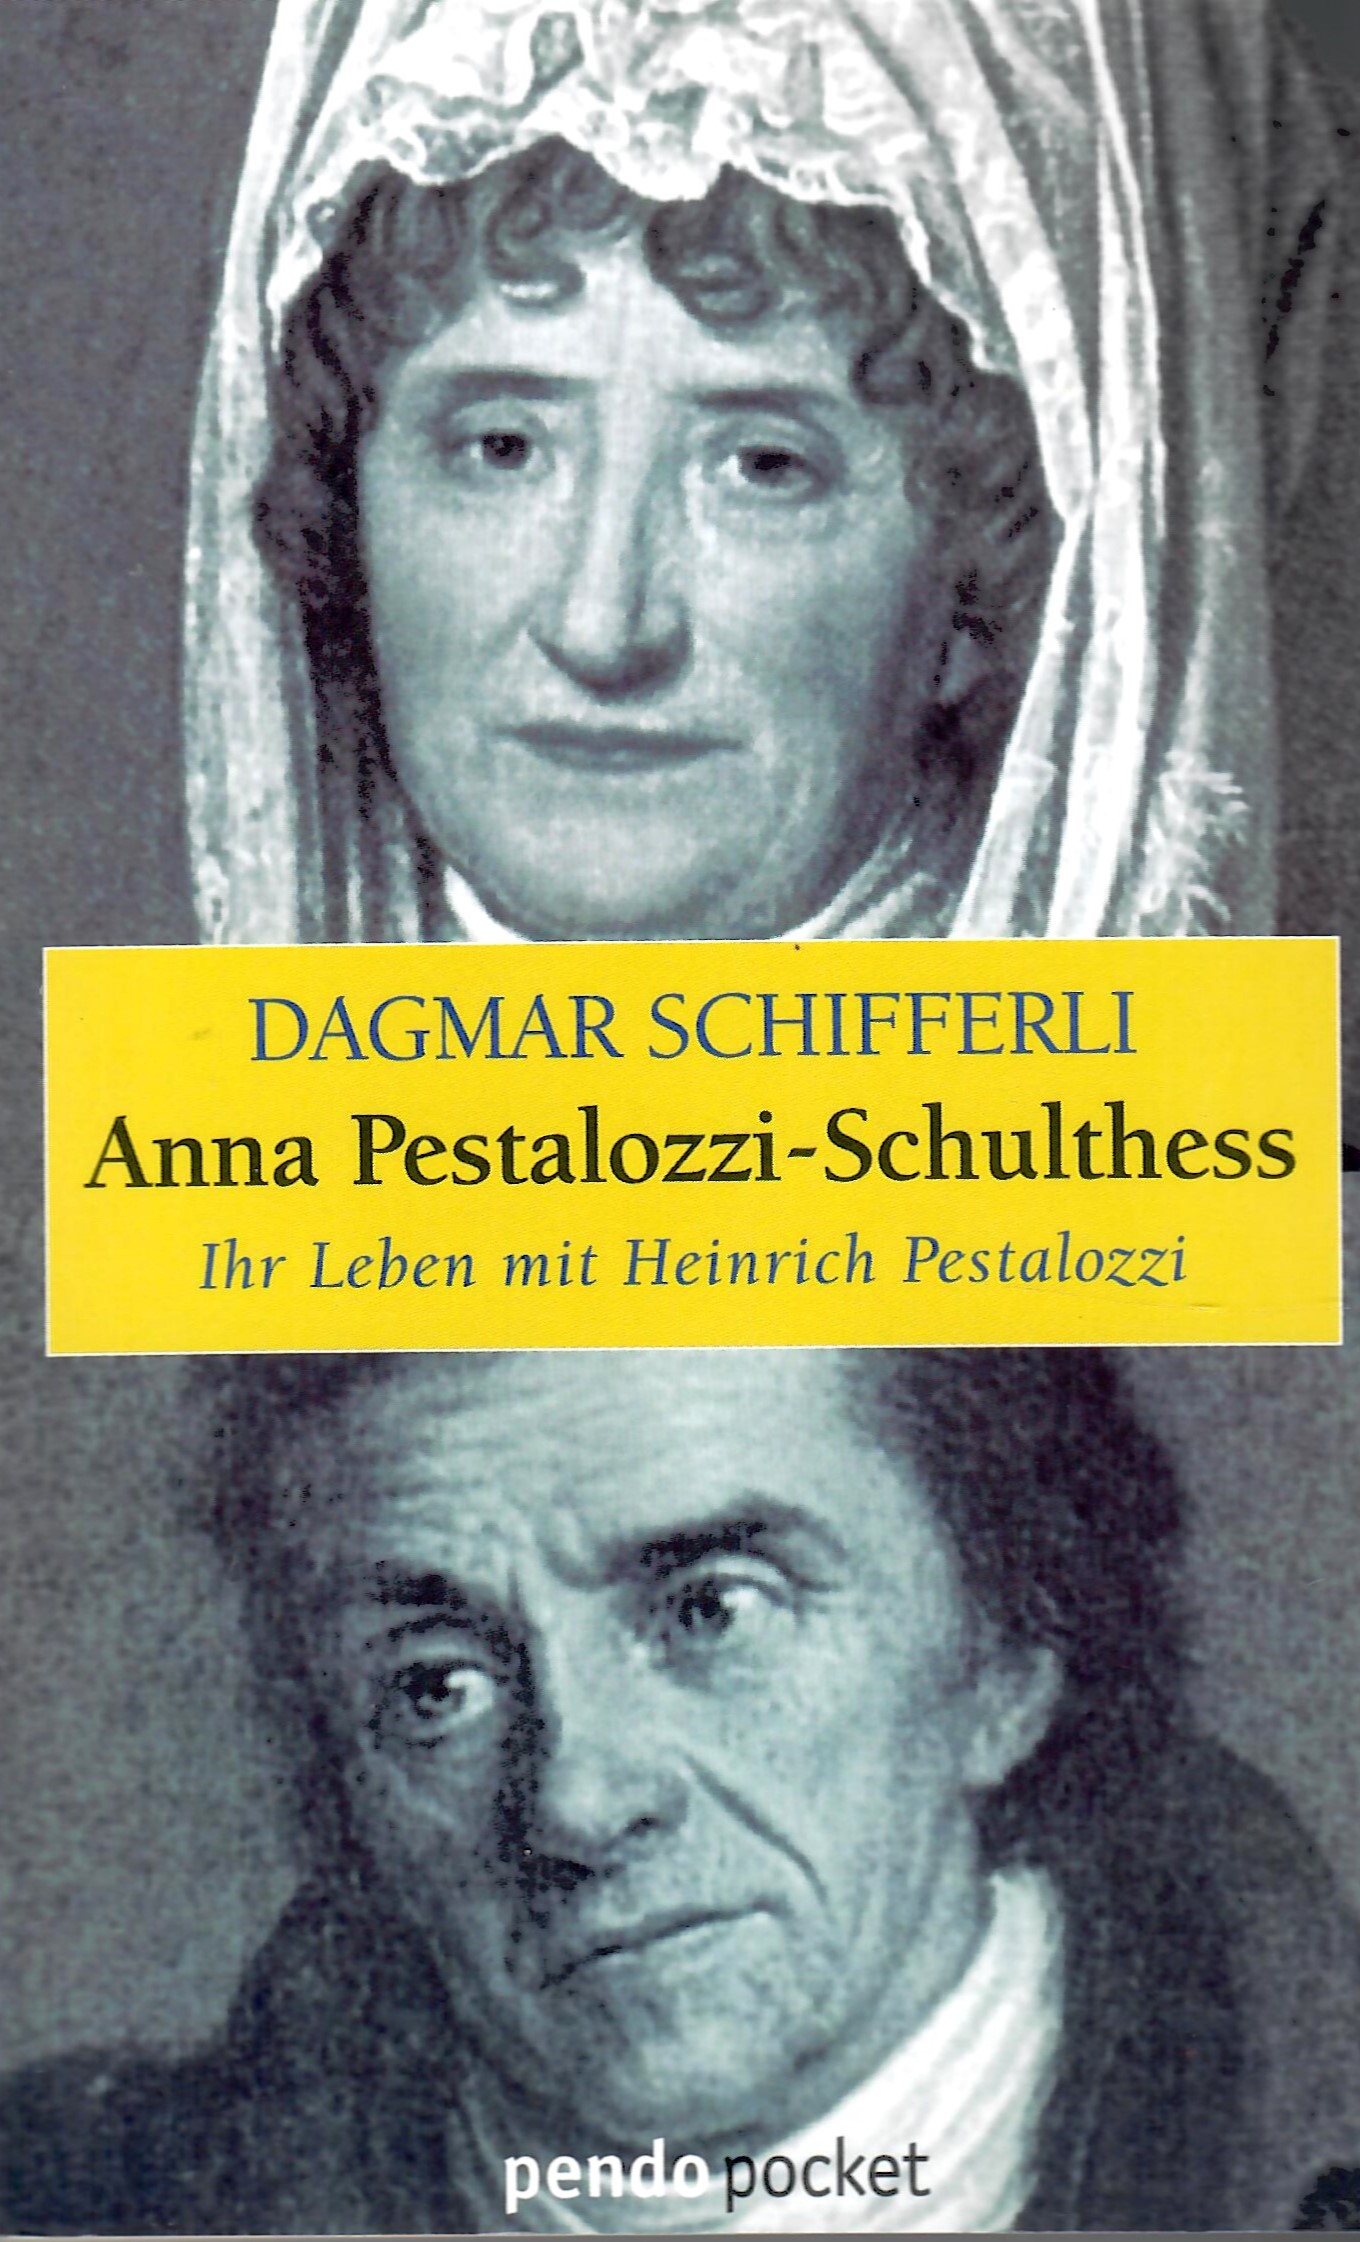 Anna Pestalozzi-Schulthess - Ihr Leben mit Heinrich Pestalozzi; Mit 16 Bildtafeln - Pendo Pocket 1 - Erste Auflage dieser Ausgabe 1998 - Schifferli,Dagmar